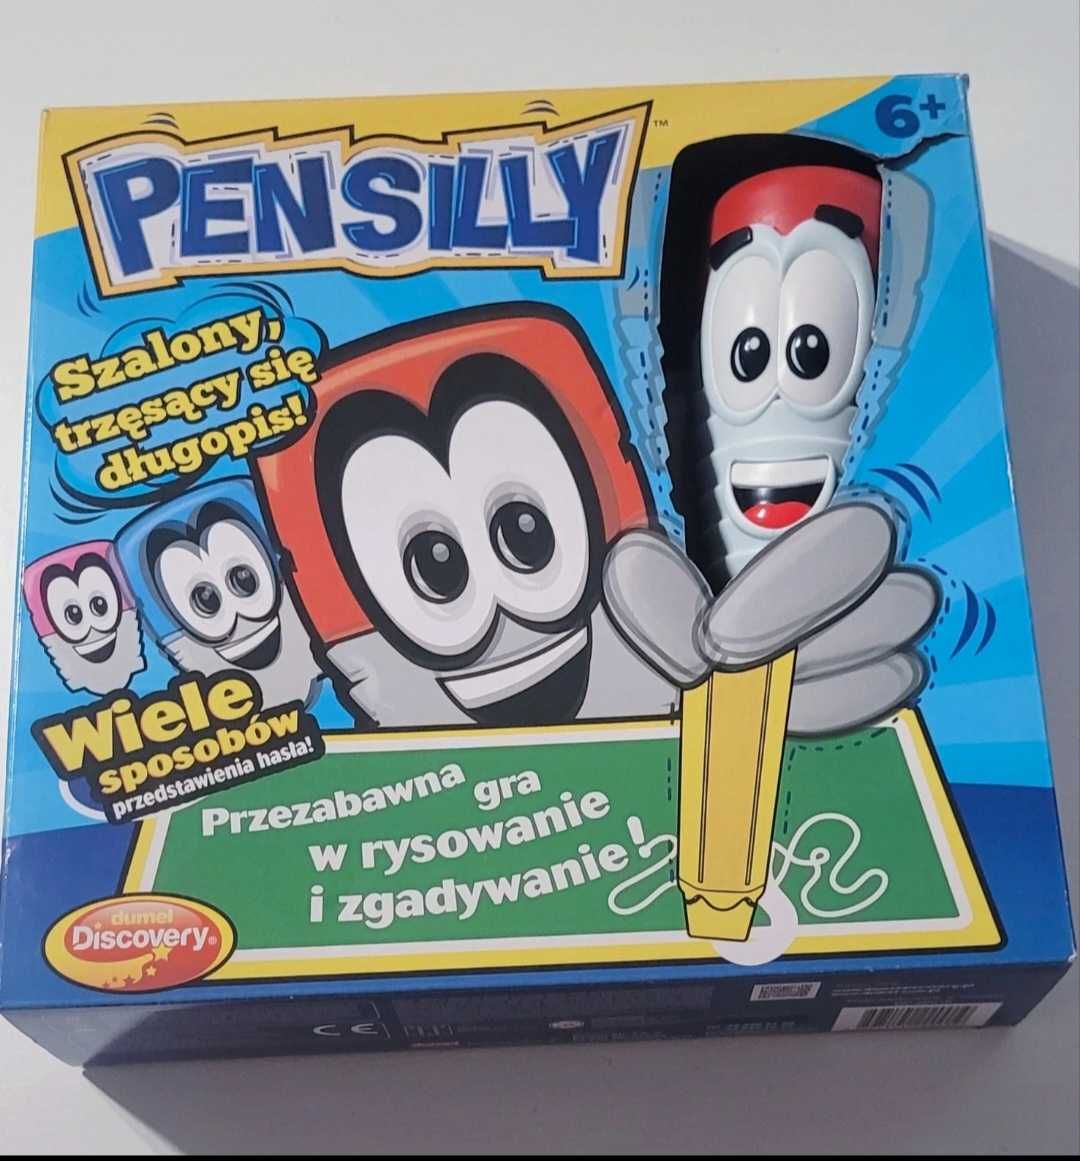 Gra dla dzieci Pensilly szalony długopis dumel discovery